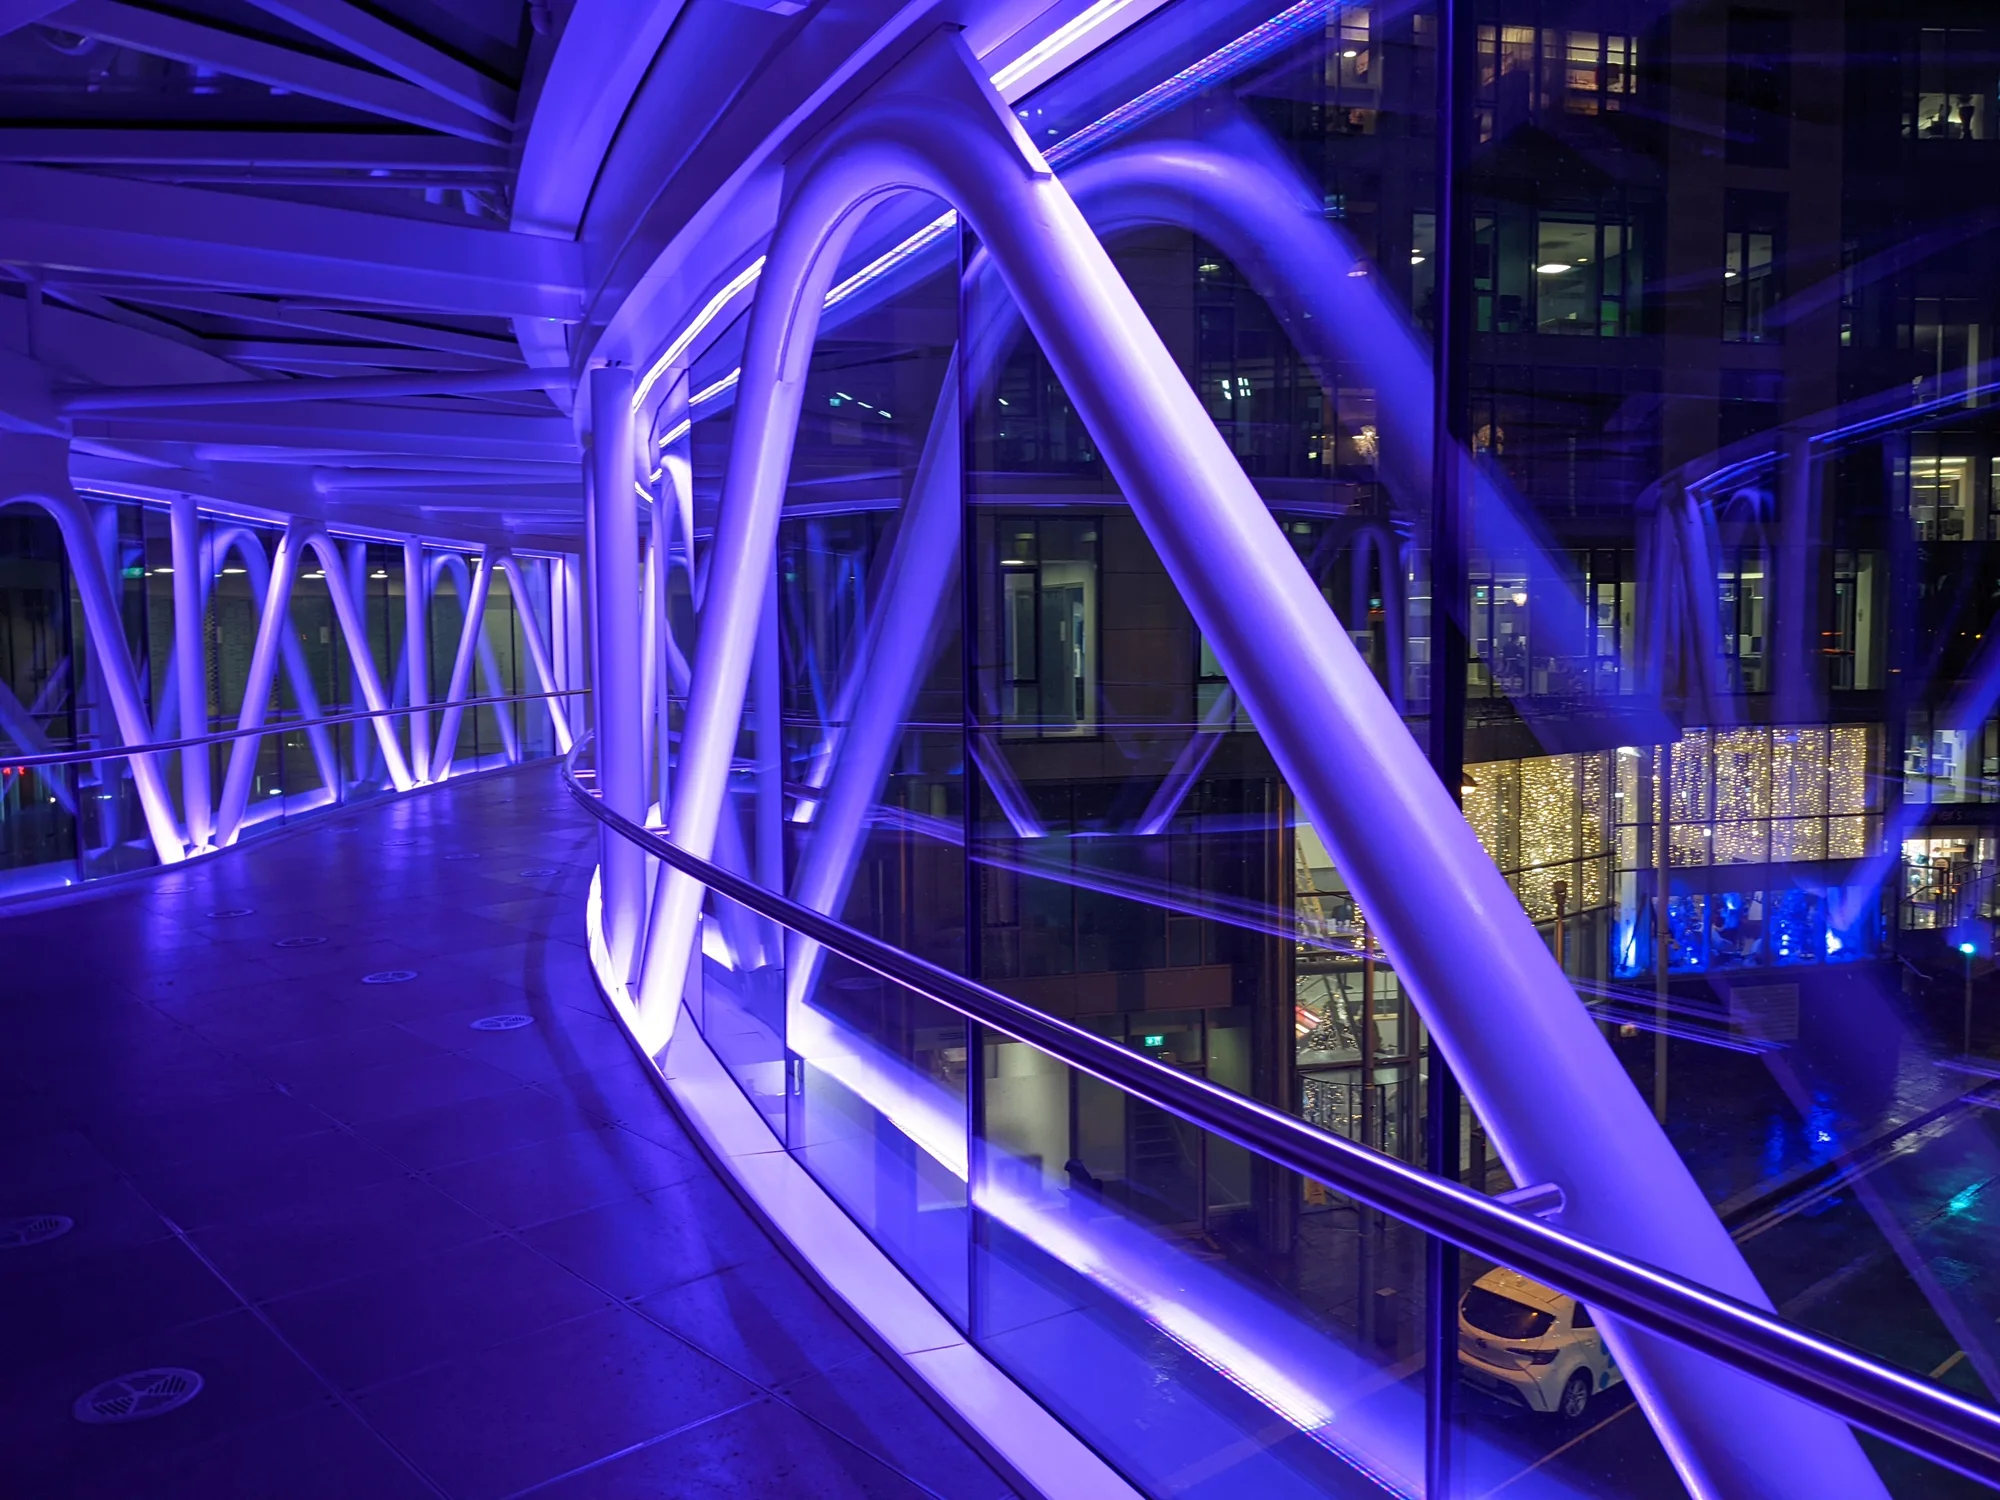 Bild, aufgenommen in der sogenannten Hyperlink-Brücke, die drei Google-Büros in Dublin miteinander verbindet. Die Brücke ist lila erleuchtet, was auch von außen zu sehen ist.